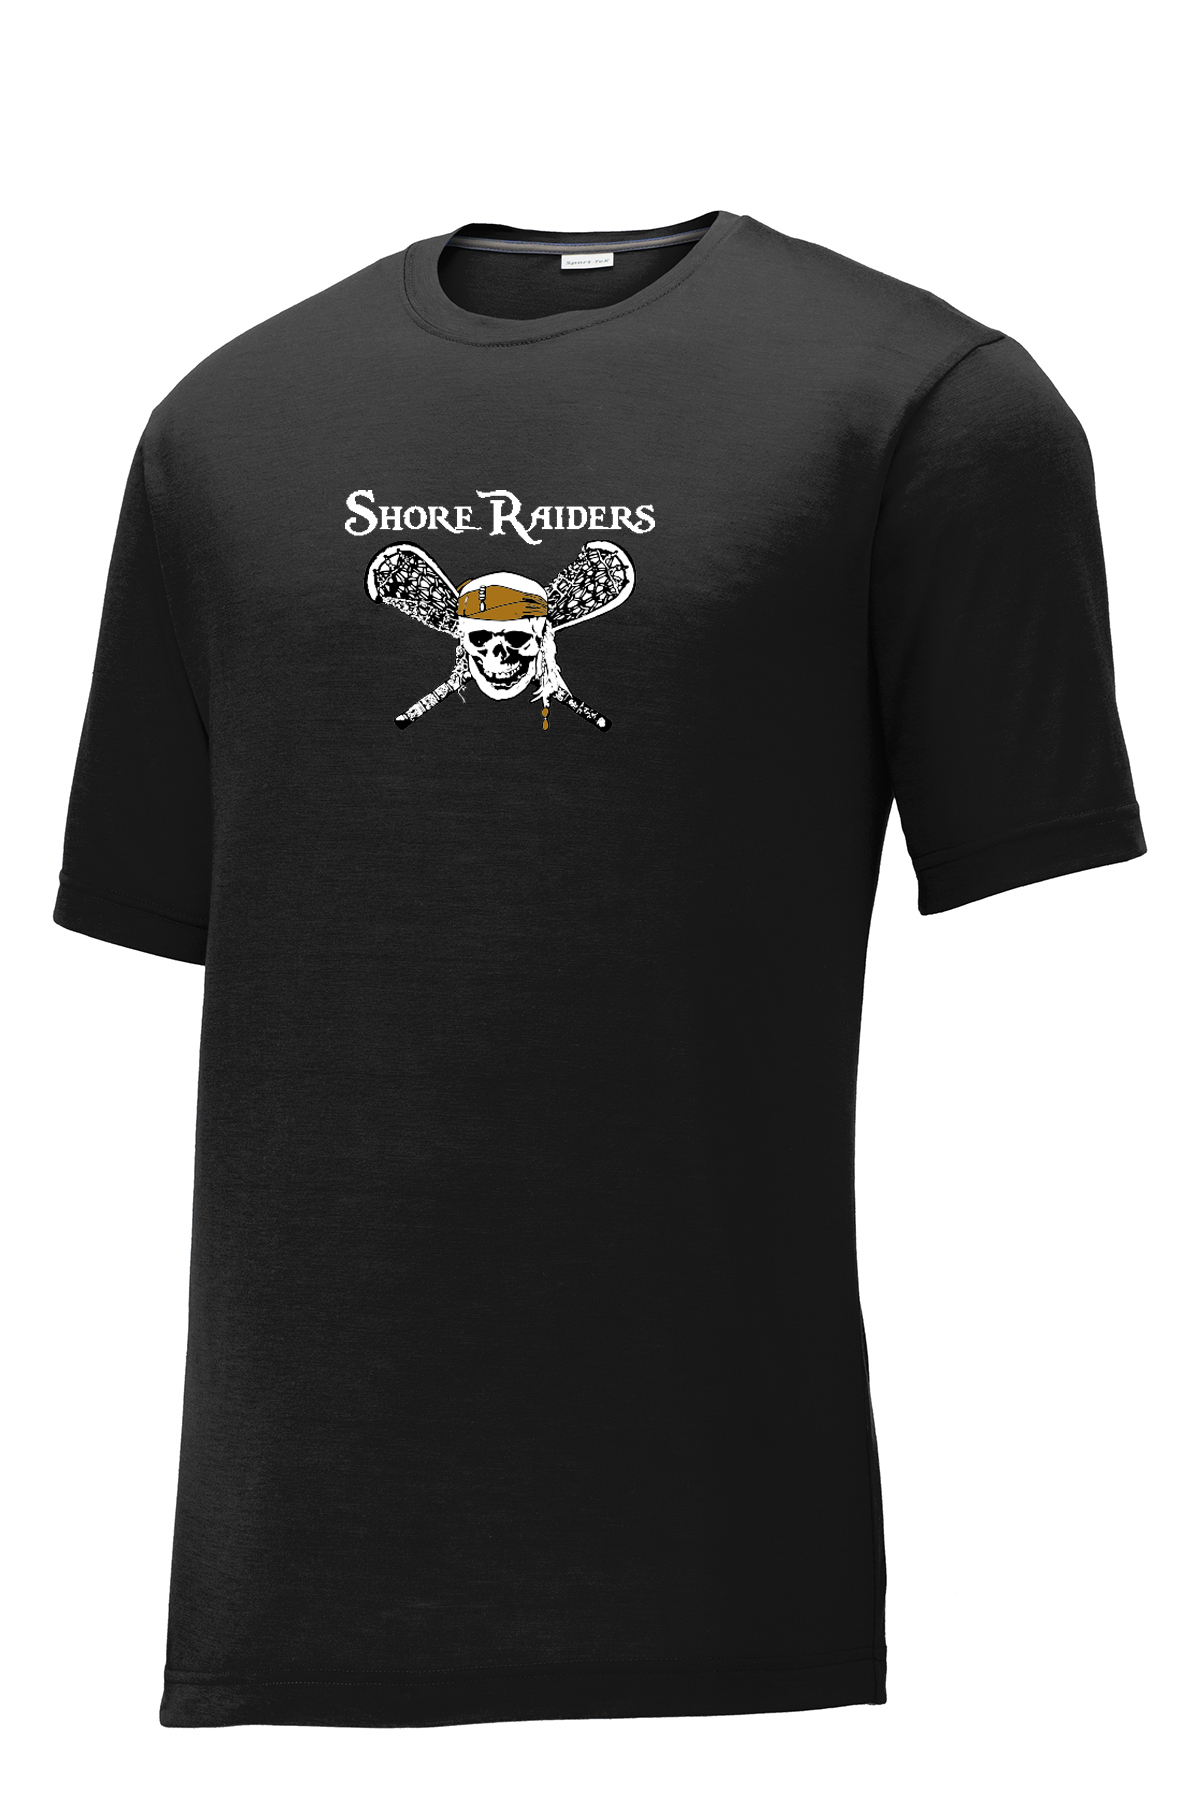 Shore Raiders Lacrosse CottonTouch Performance T-Shirt